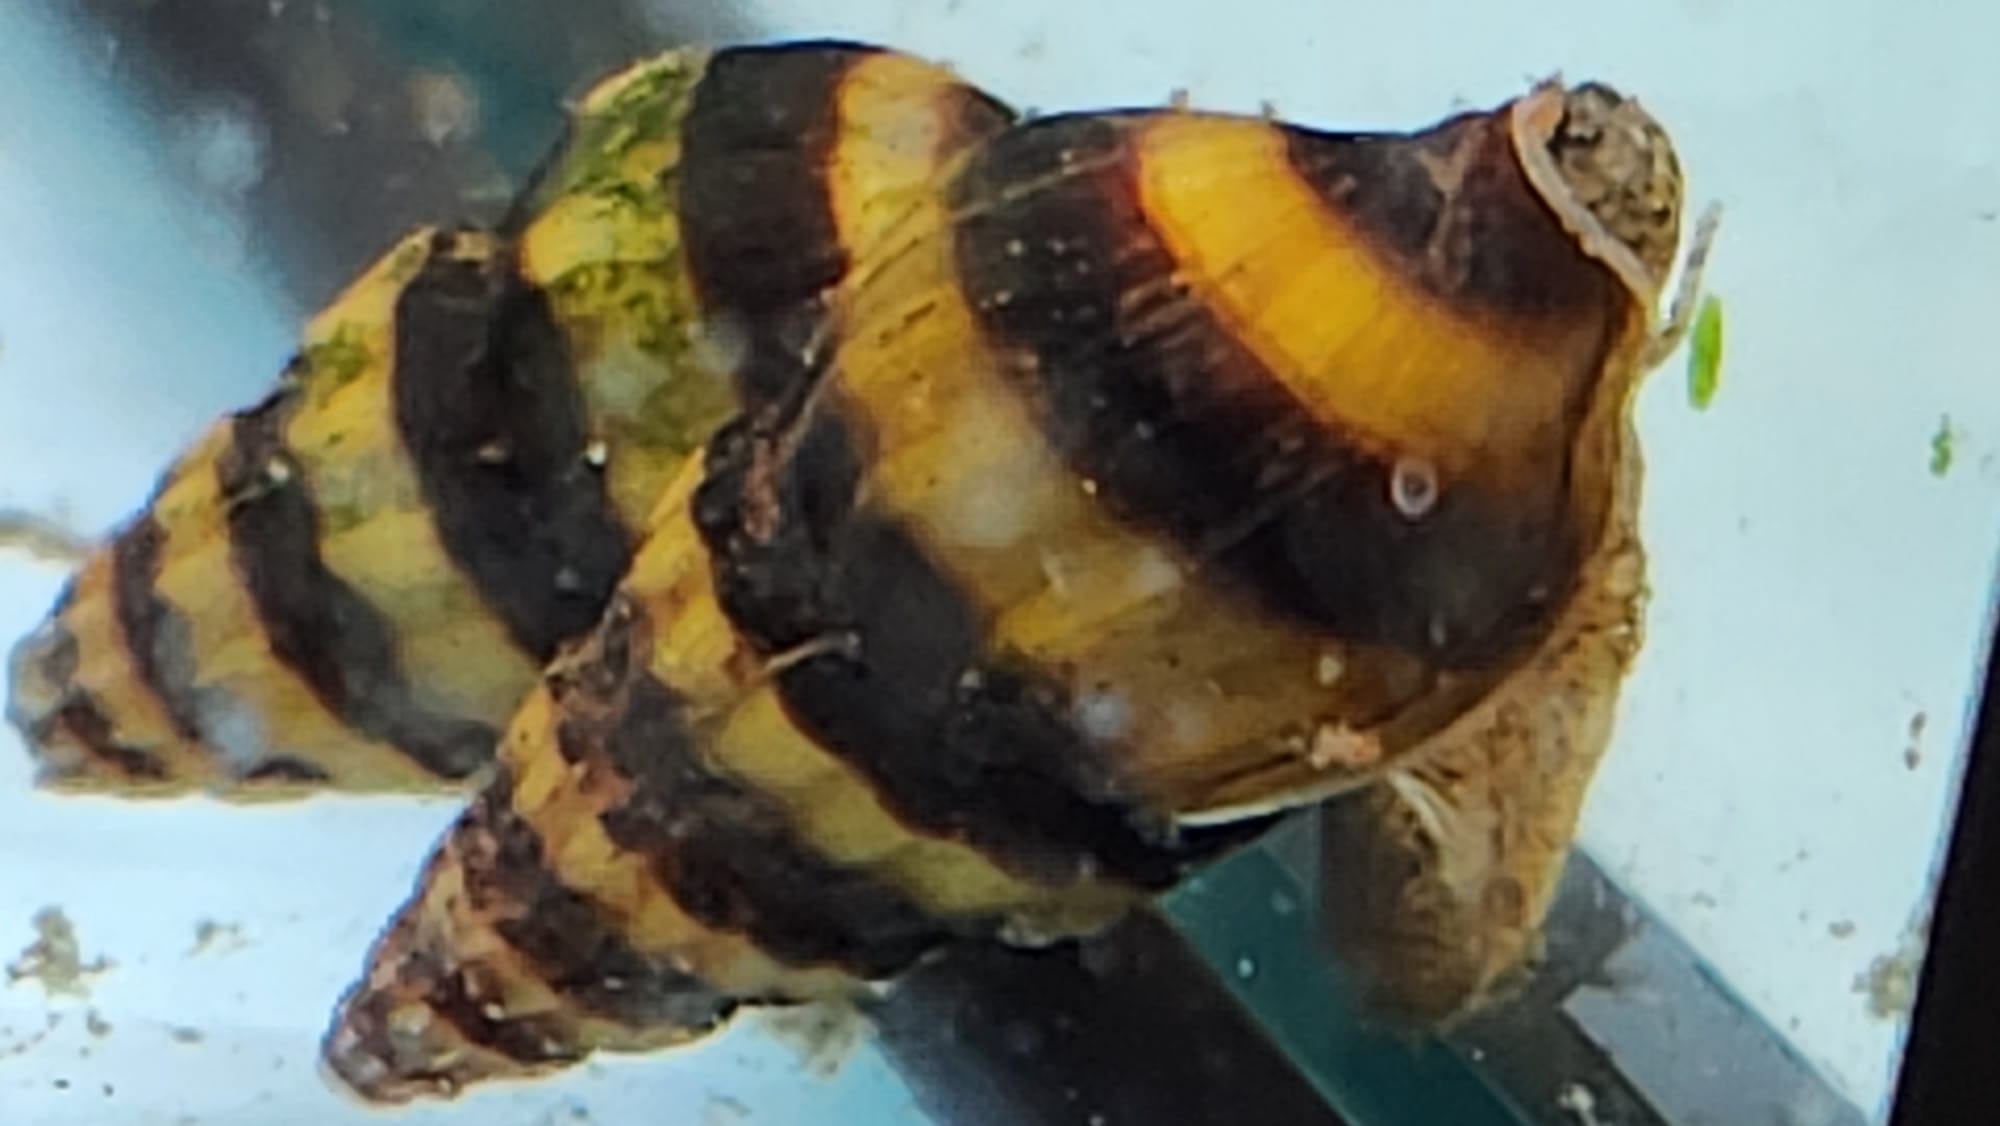 Assasin snail